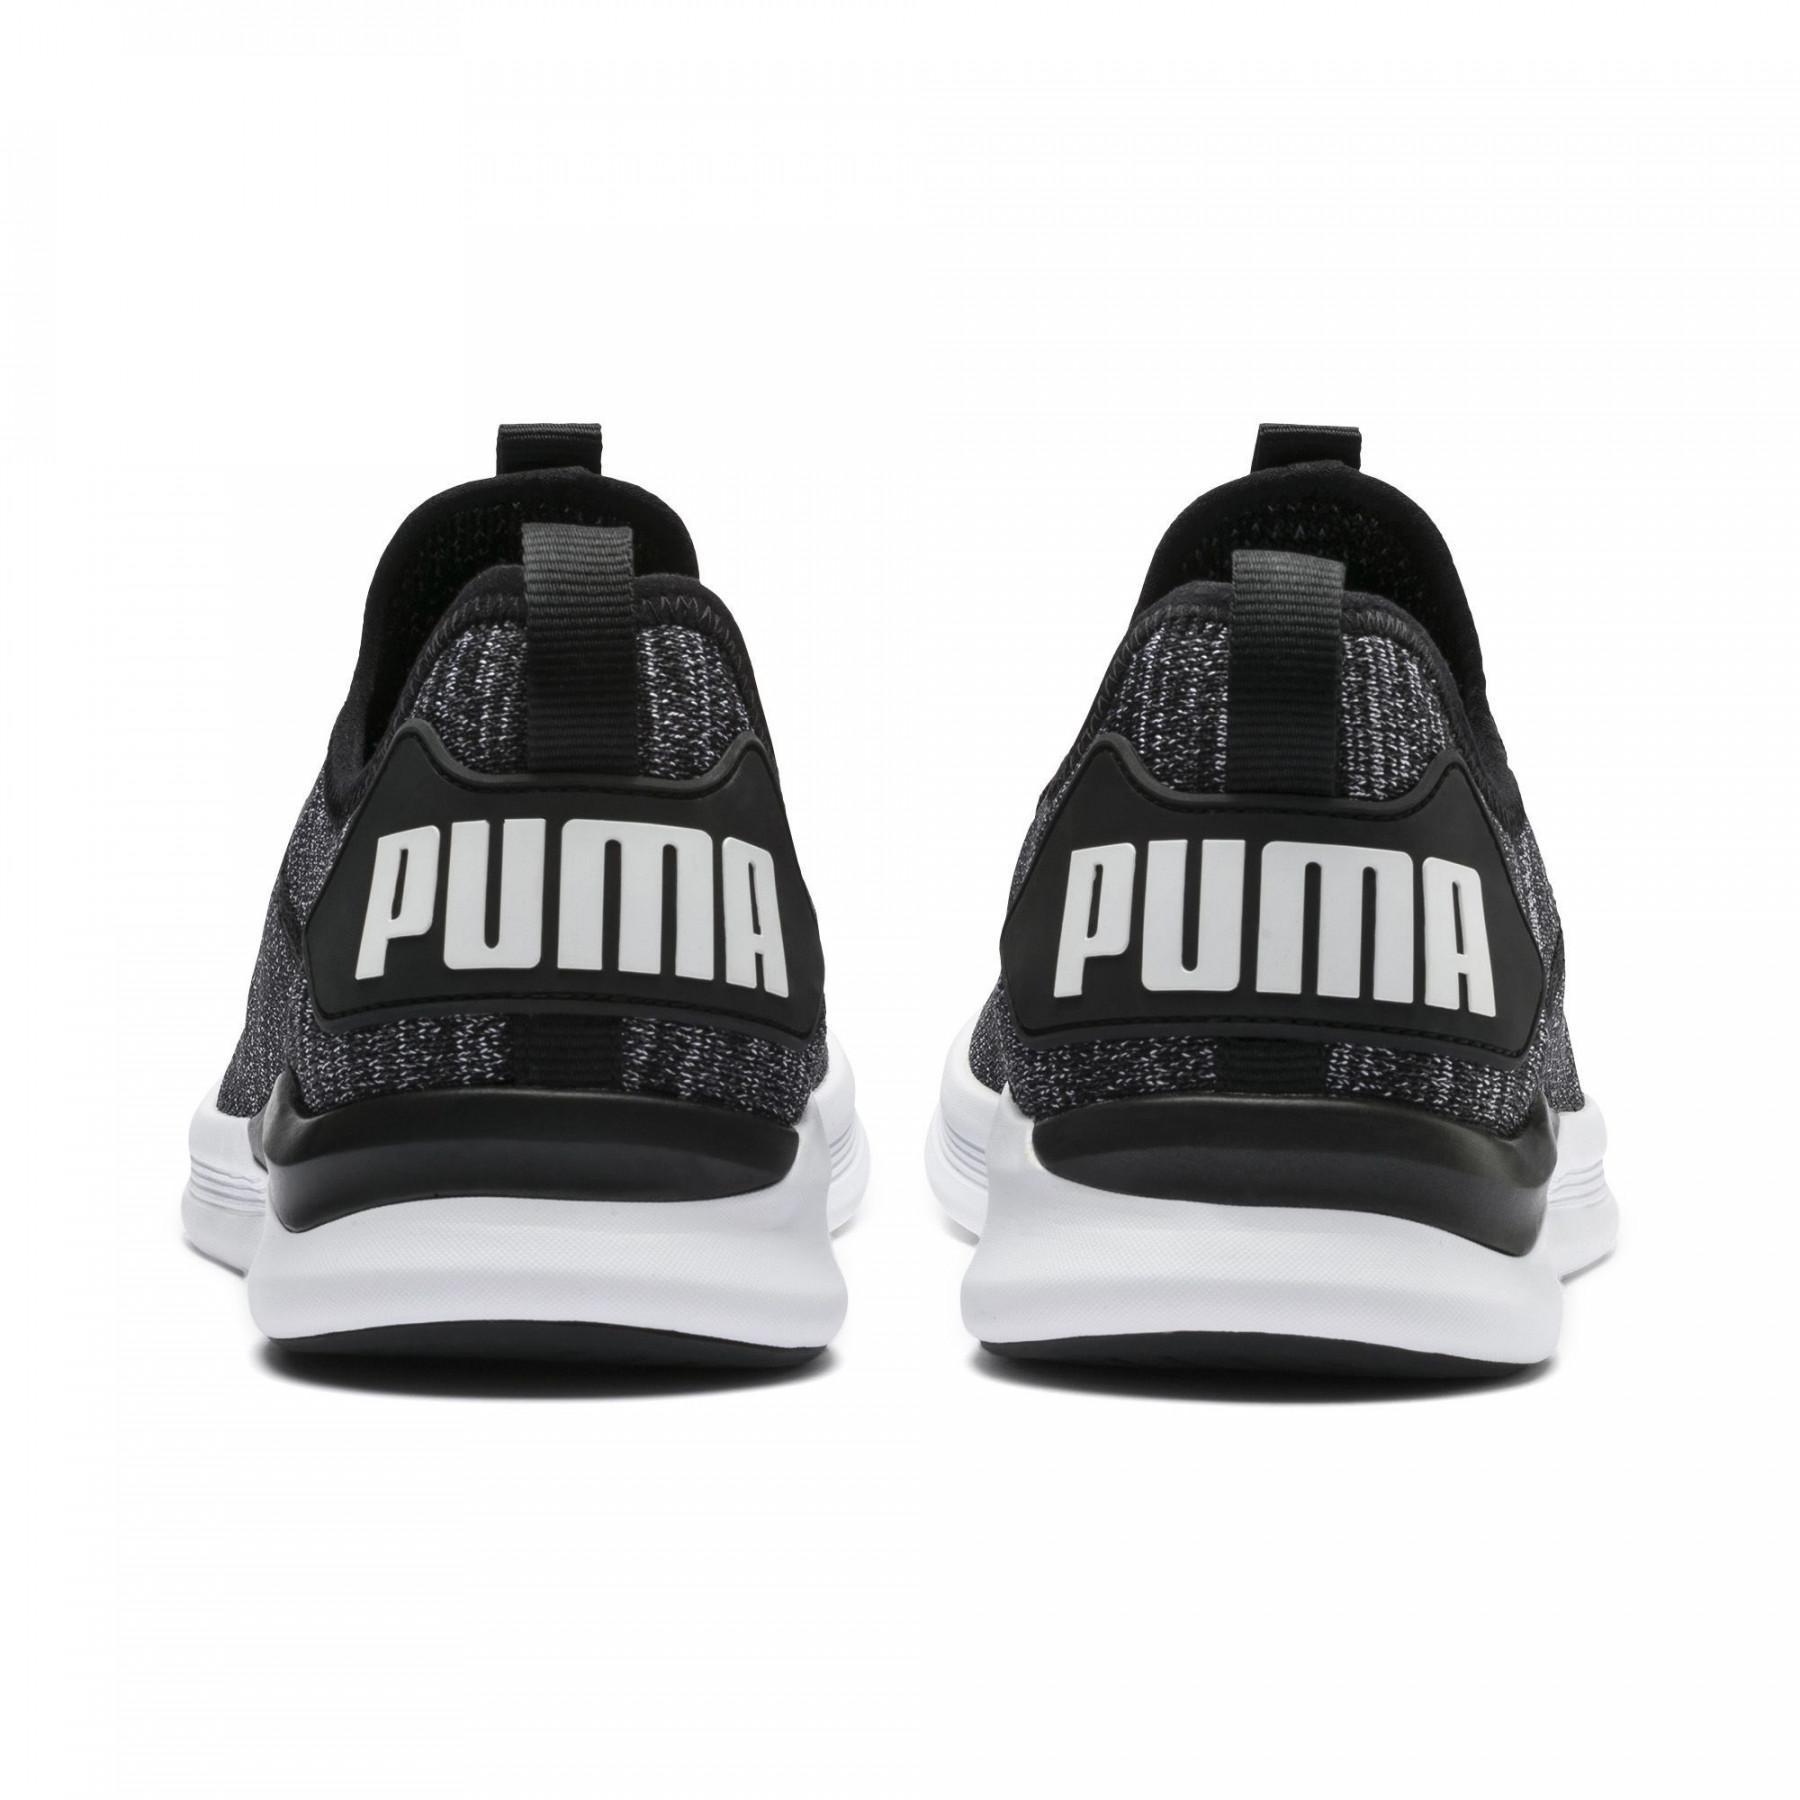 Shoes Puma Ignite Flash evoKNIT